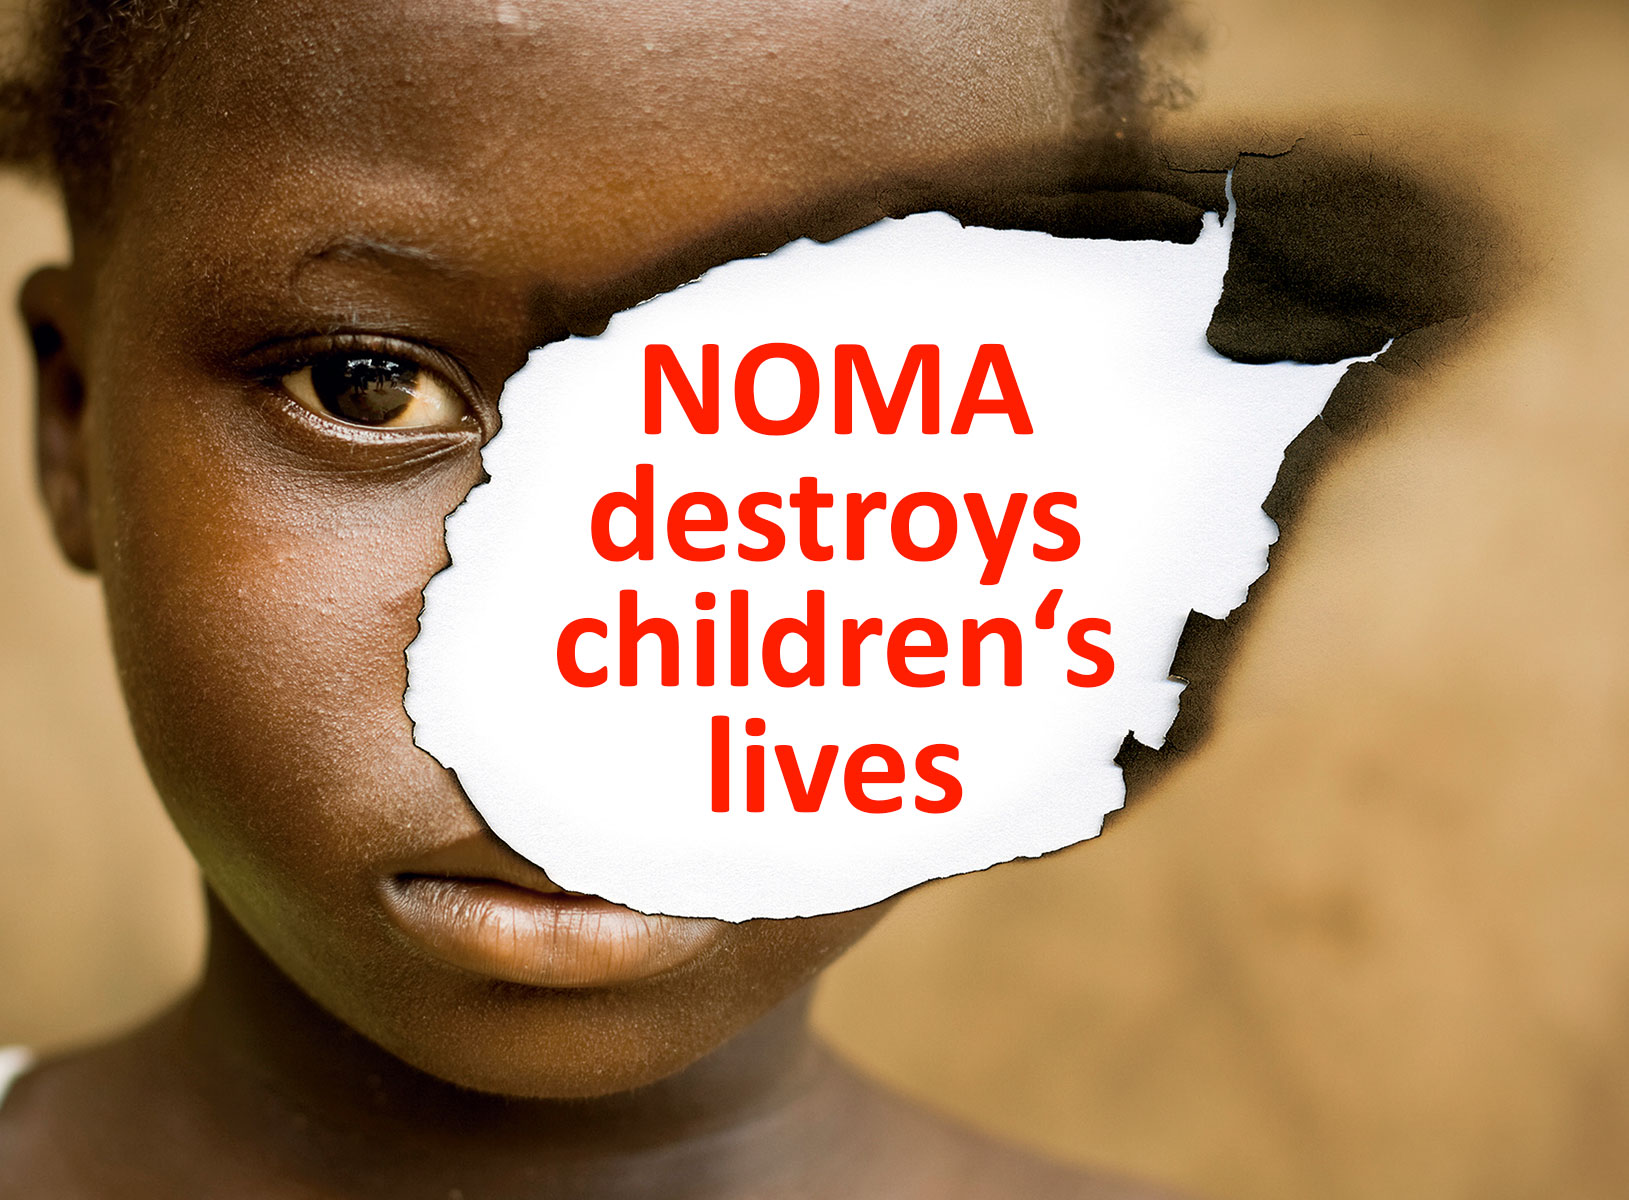 NOMA destroys children's lives